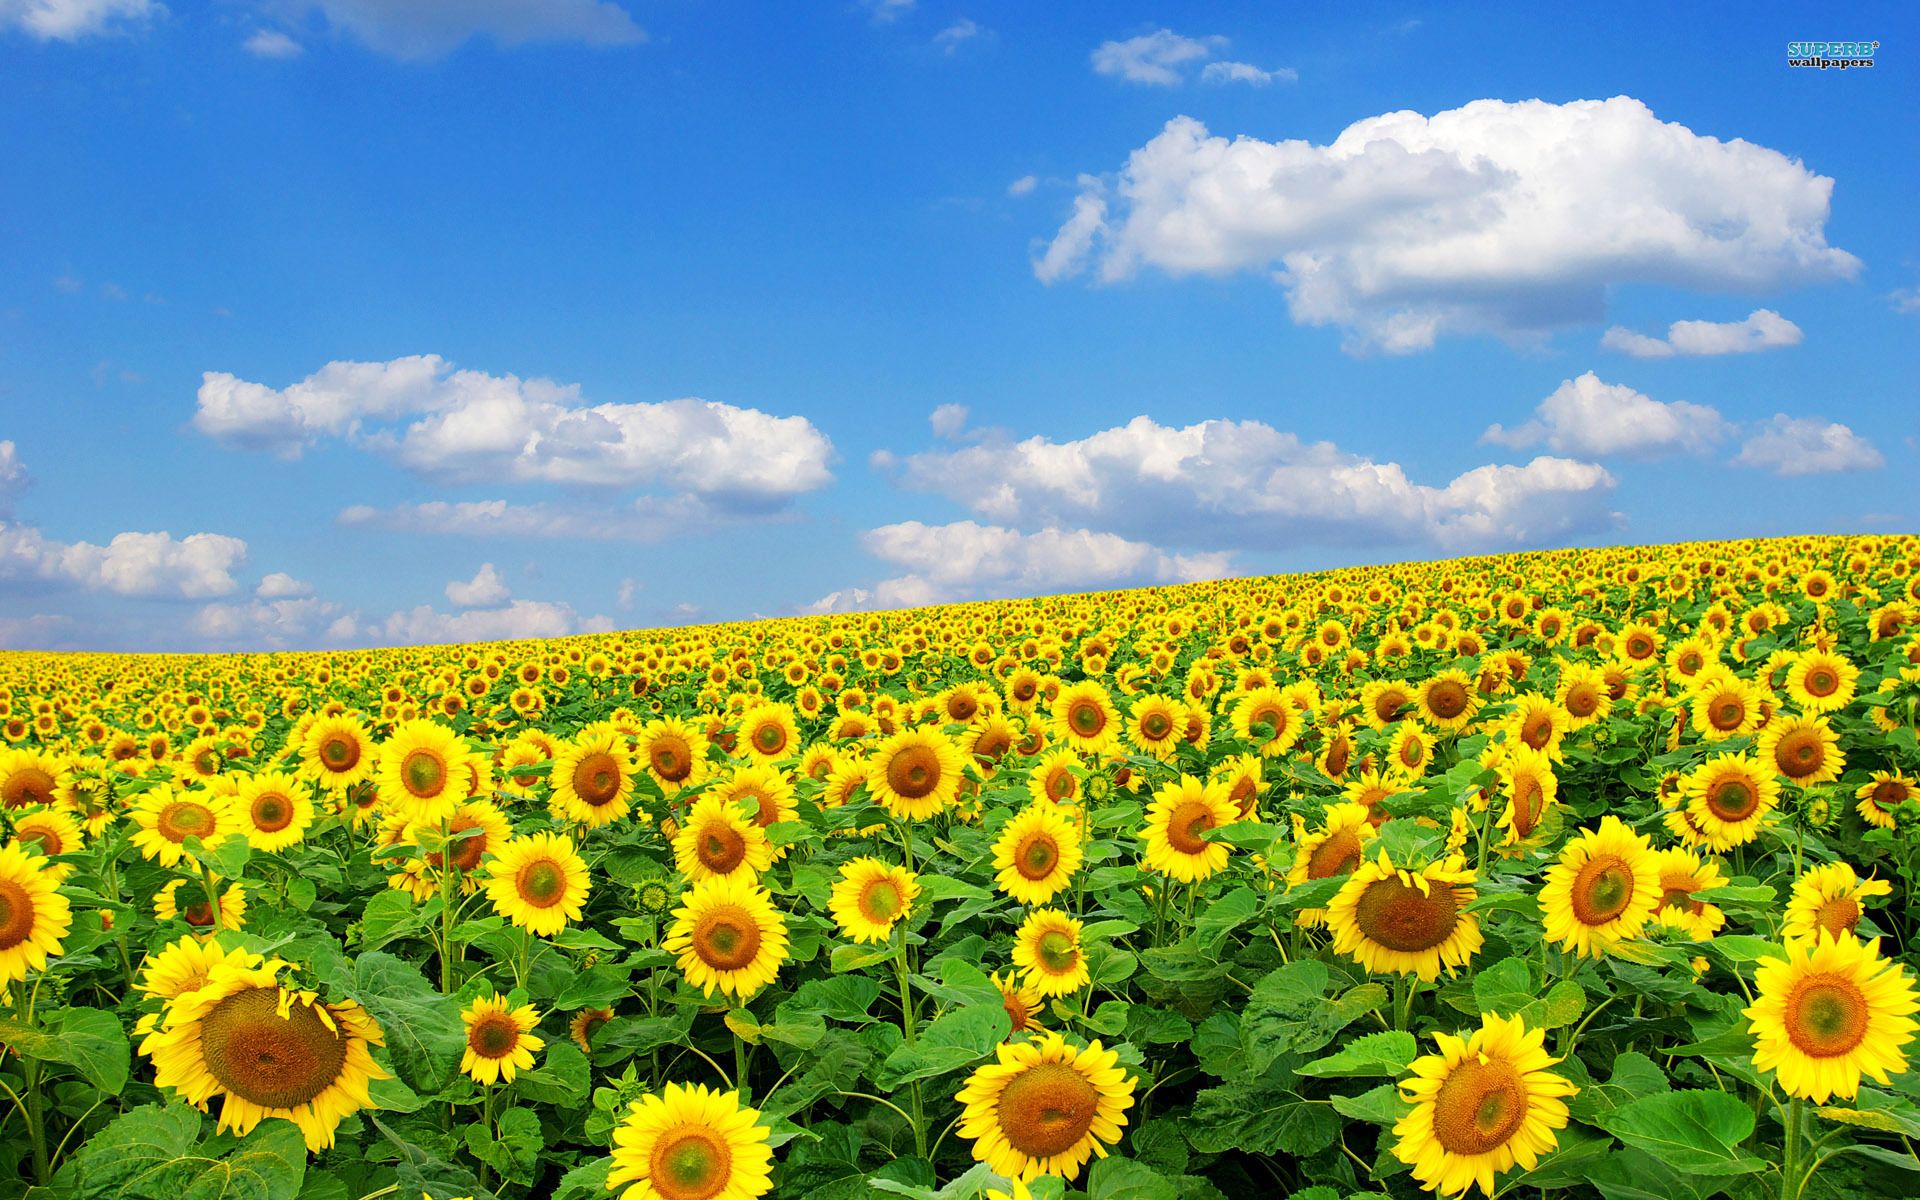 sunflower field. Scenery wallpaper, Spring wallpaper, Field wallpaper